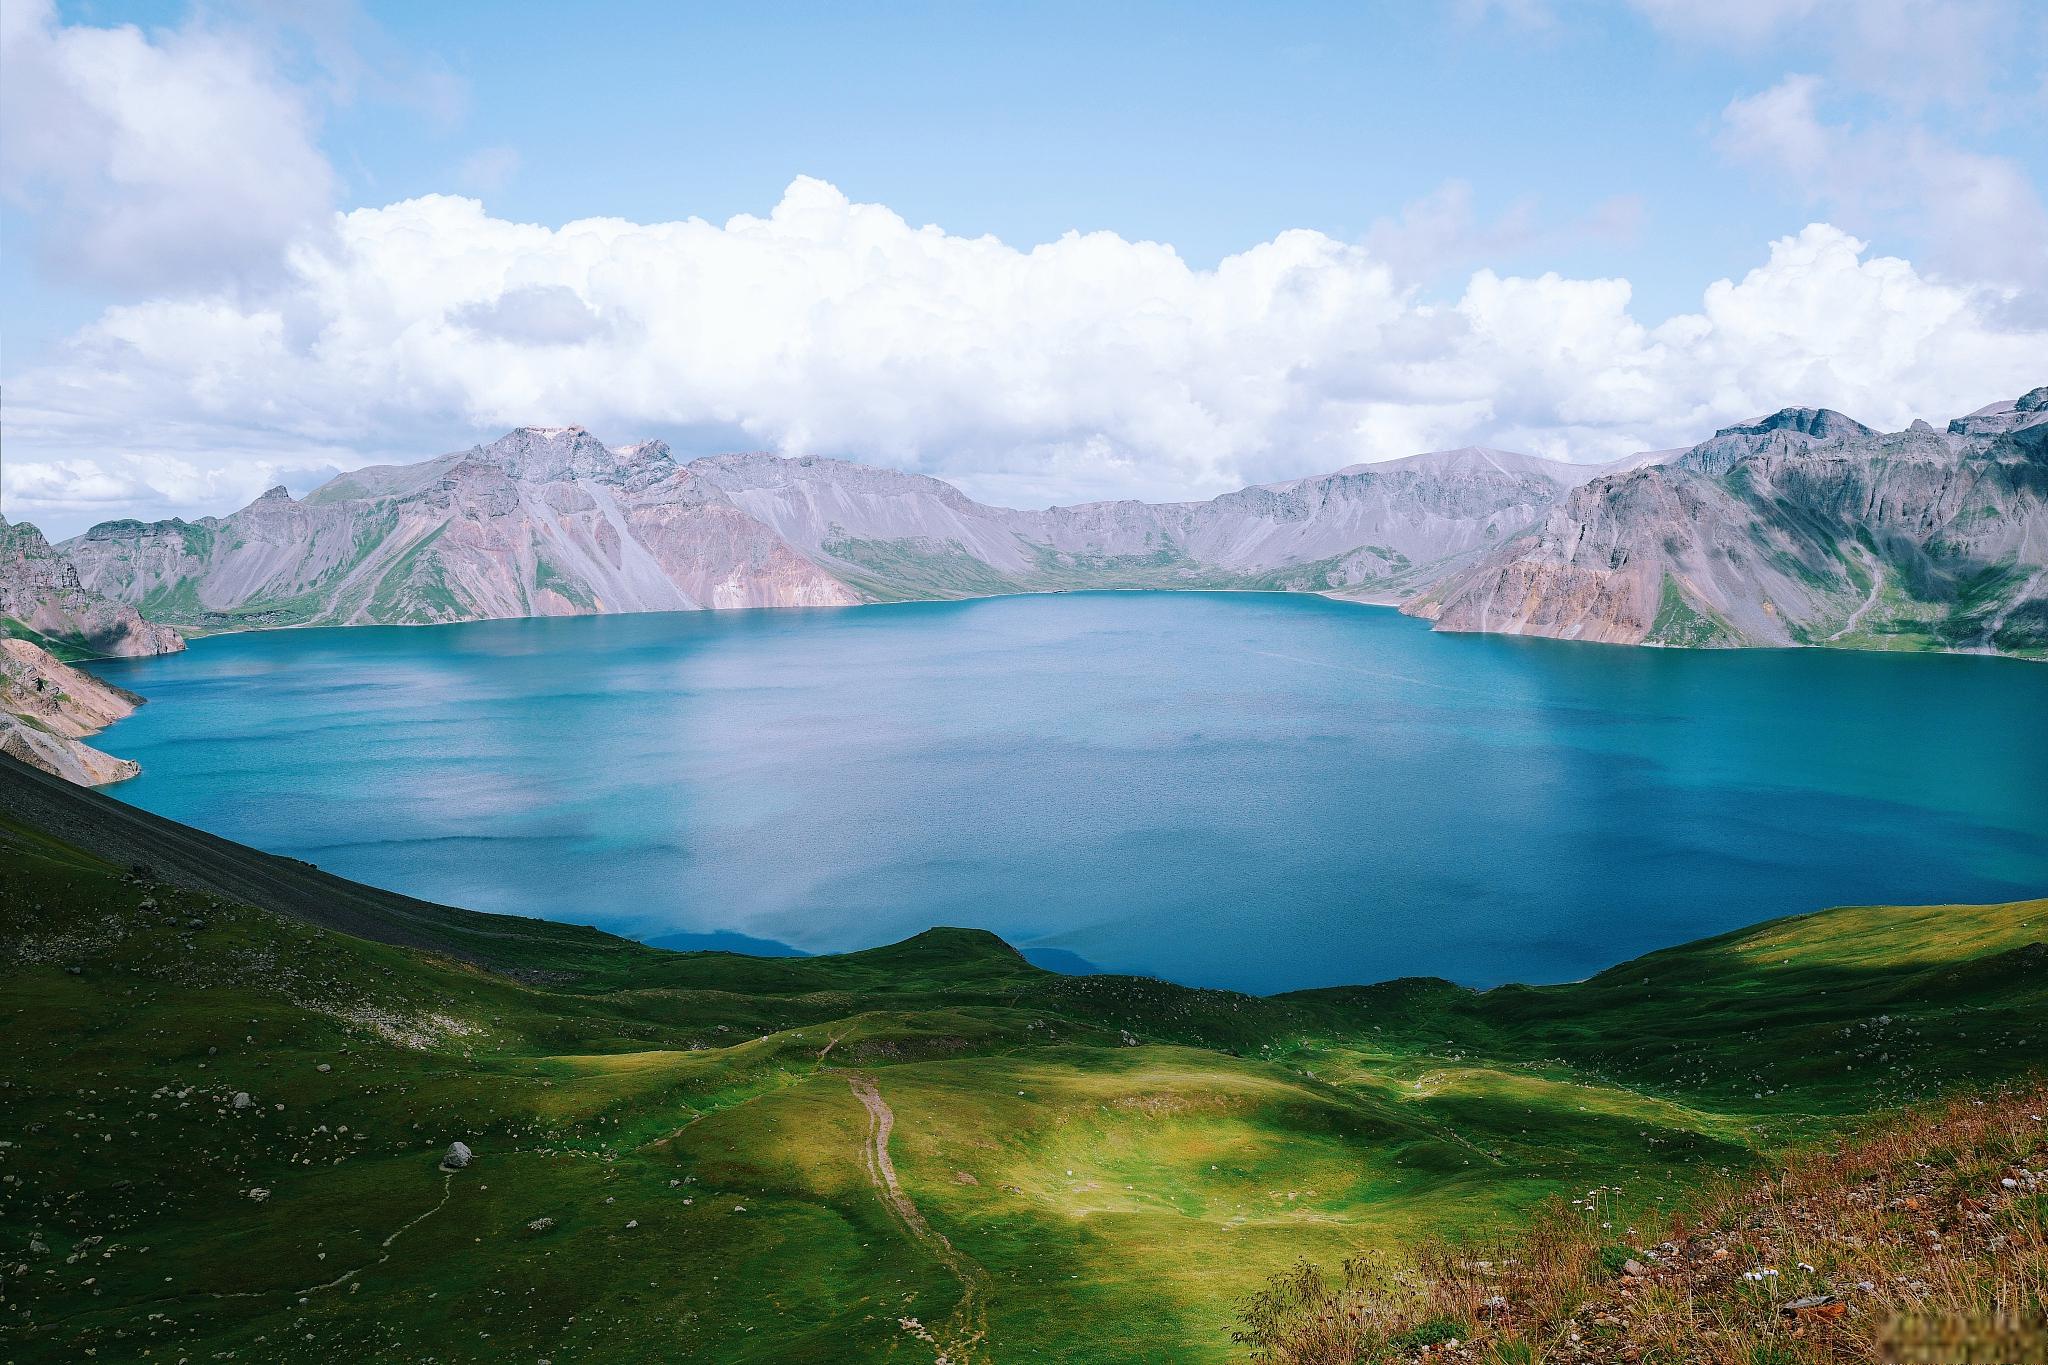 长白山:四季美景与温泉之源,自然与人文的瑰宝 长白山,那座位于吉林省